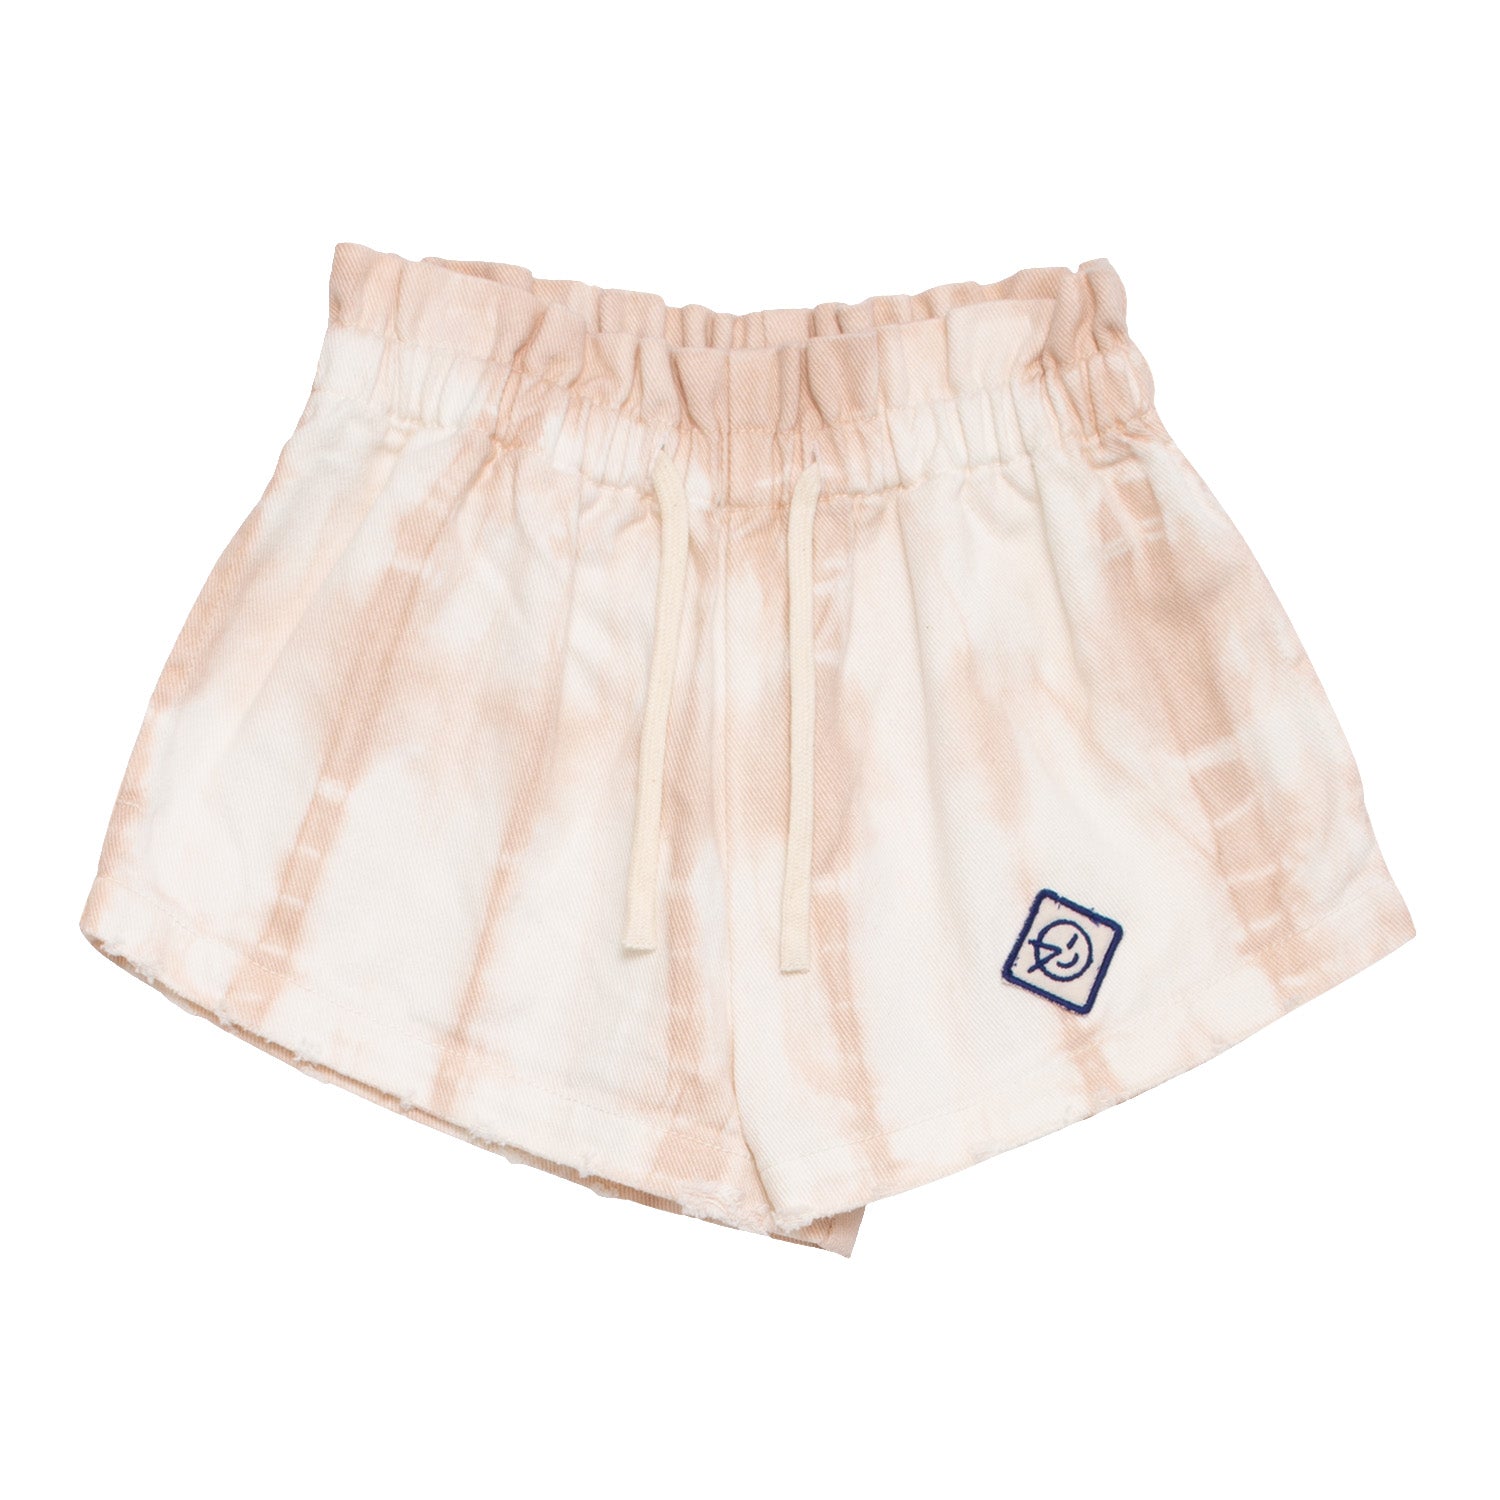 Boys & Girls Pink Tie Dye Cotton Shorts